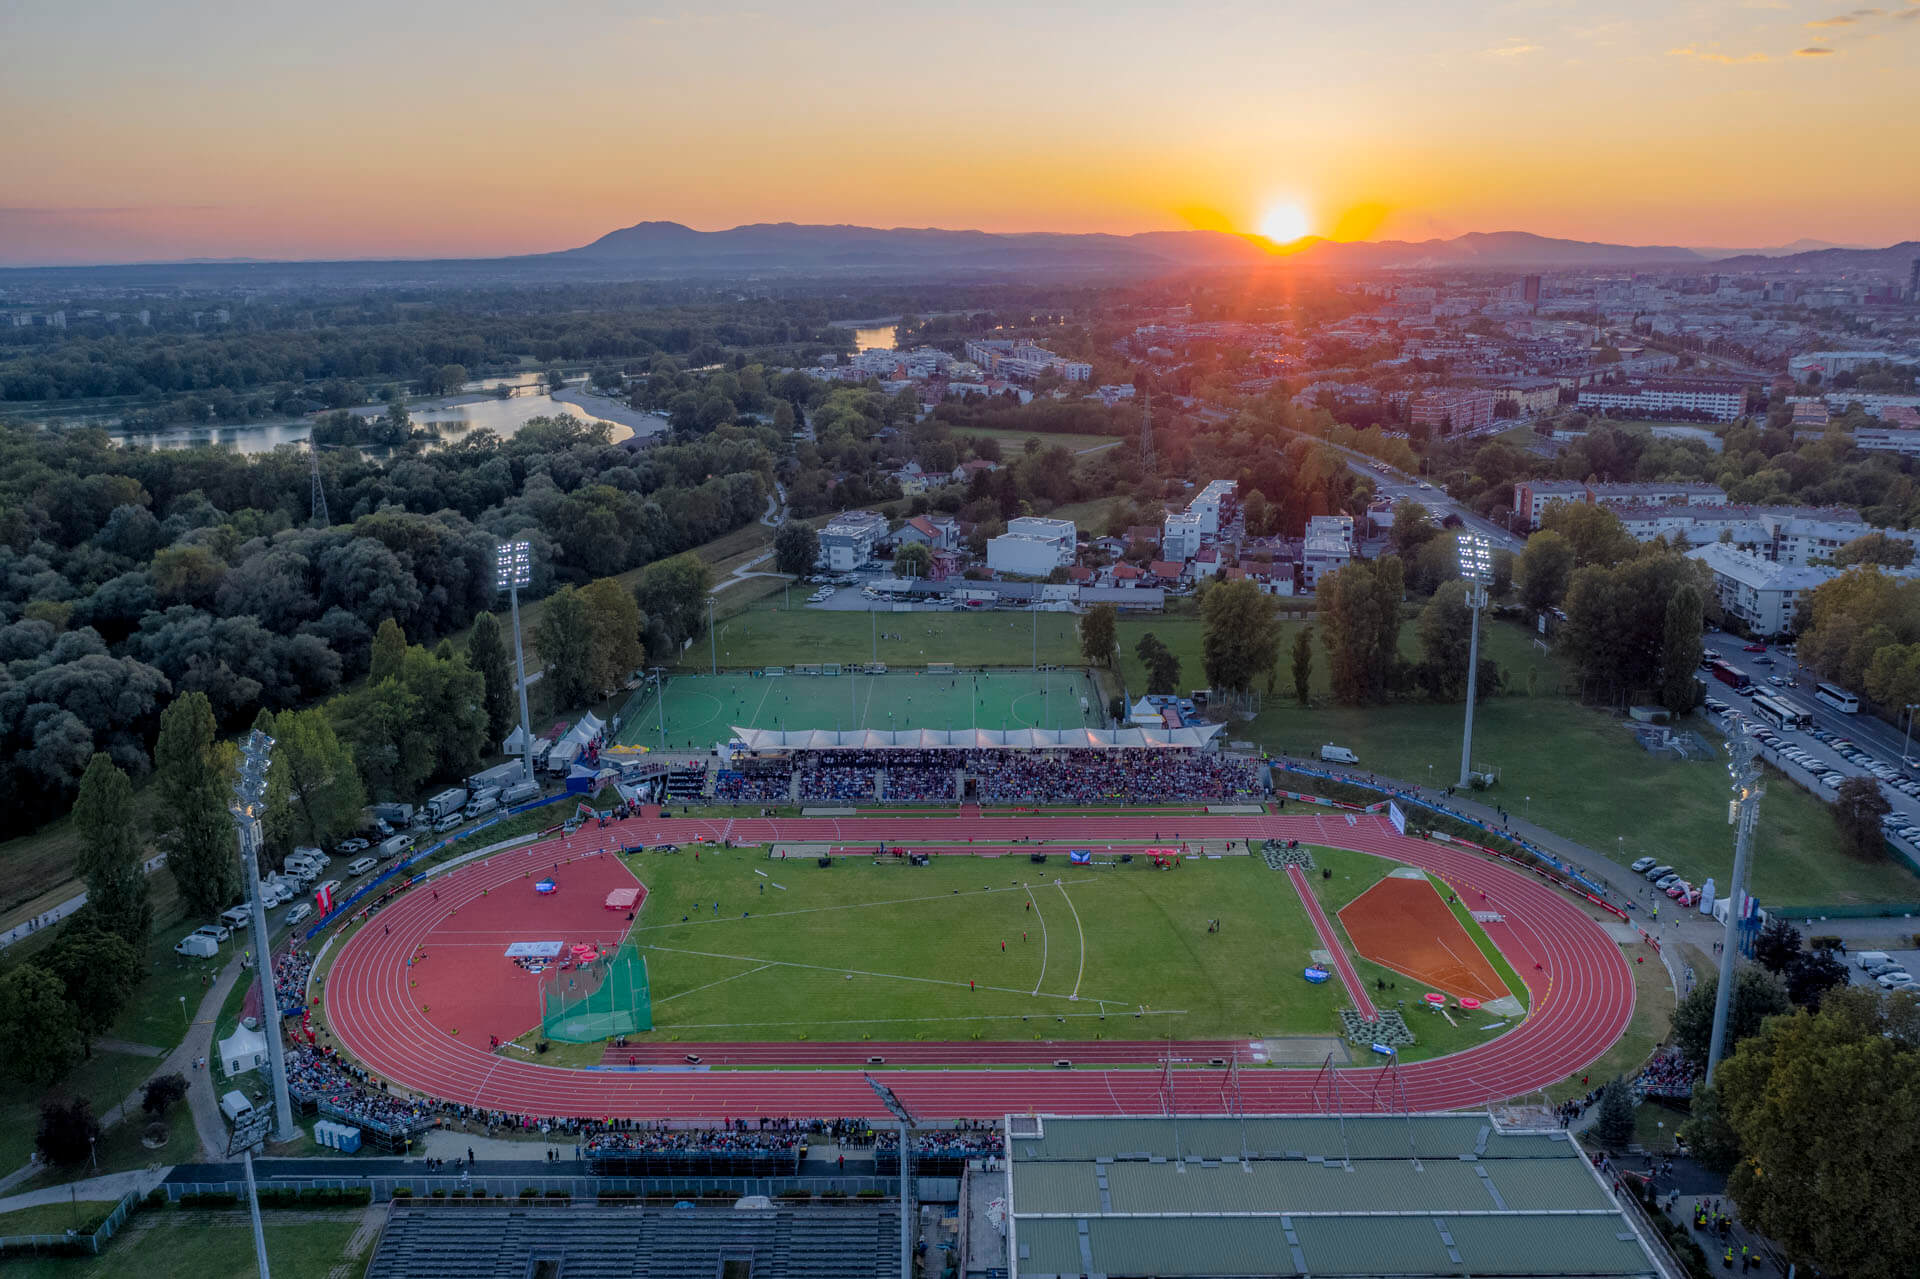 2019.09.03. Sports park Mladost, Zagreb 1